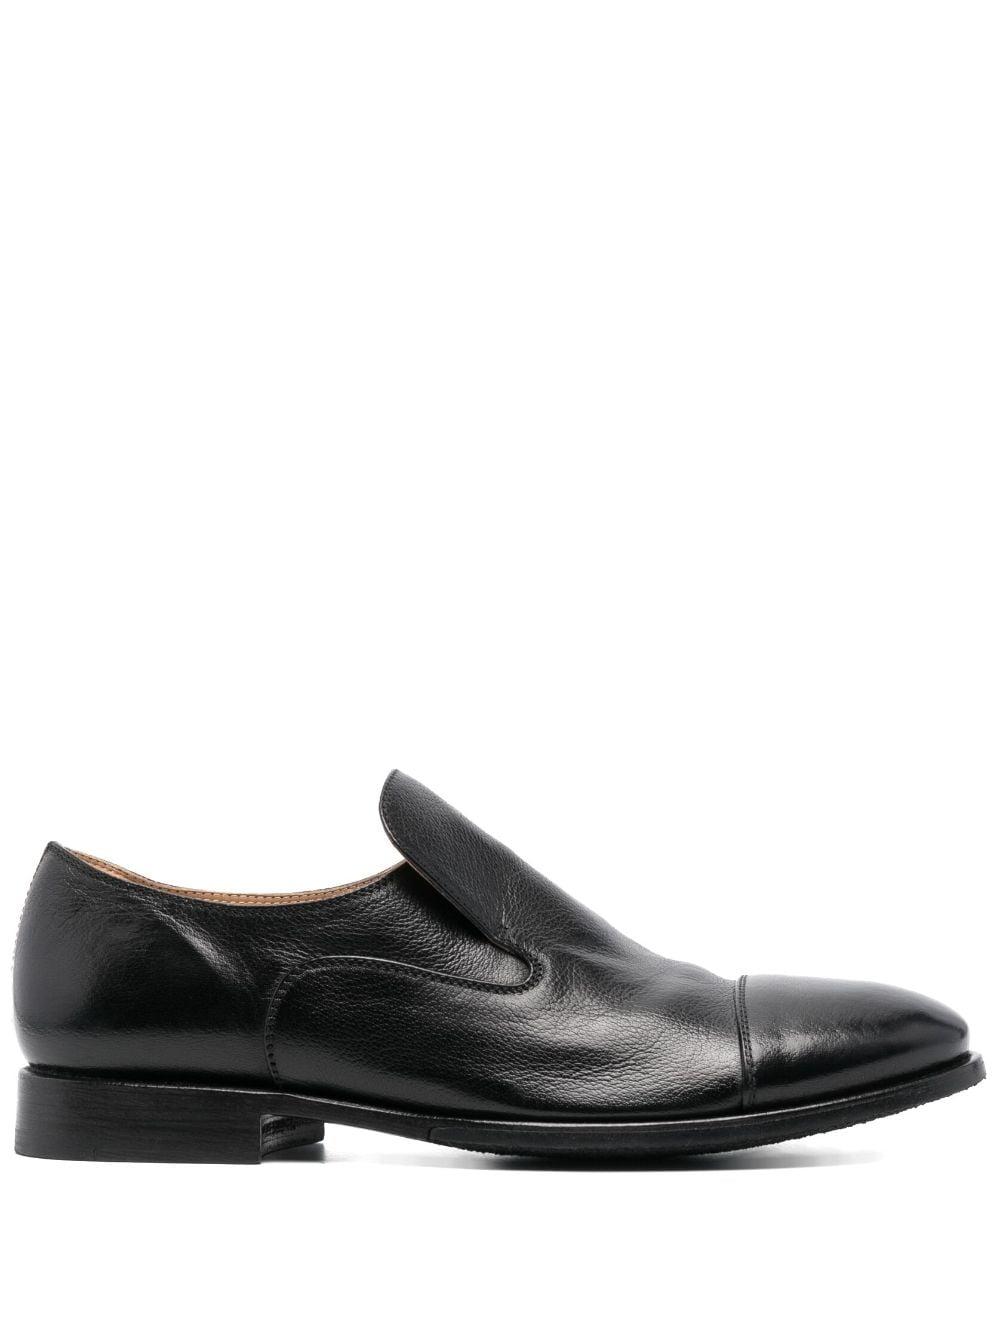 Alberto Fasciani Asymmetric Leather Loafers in Black for Men | Lyst UK